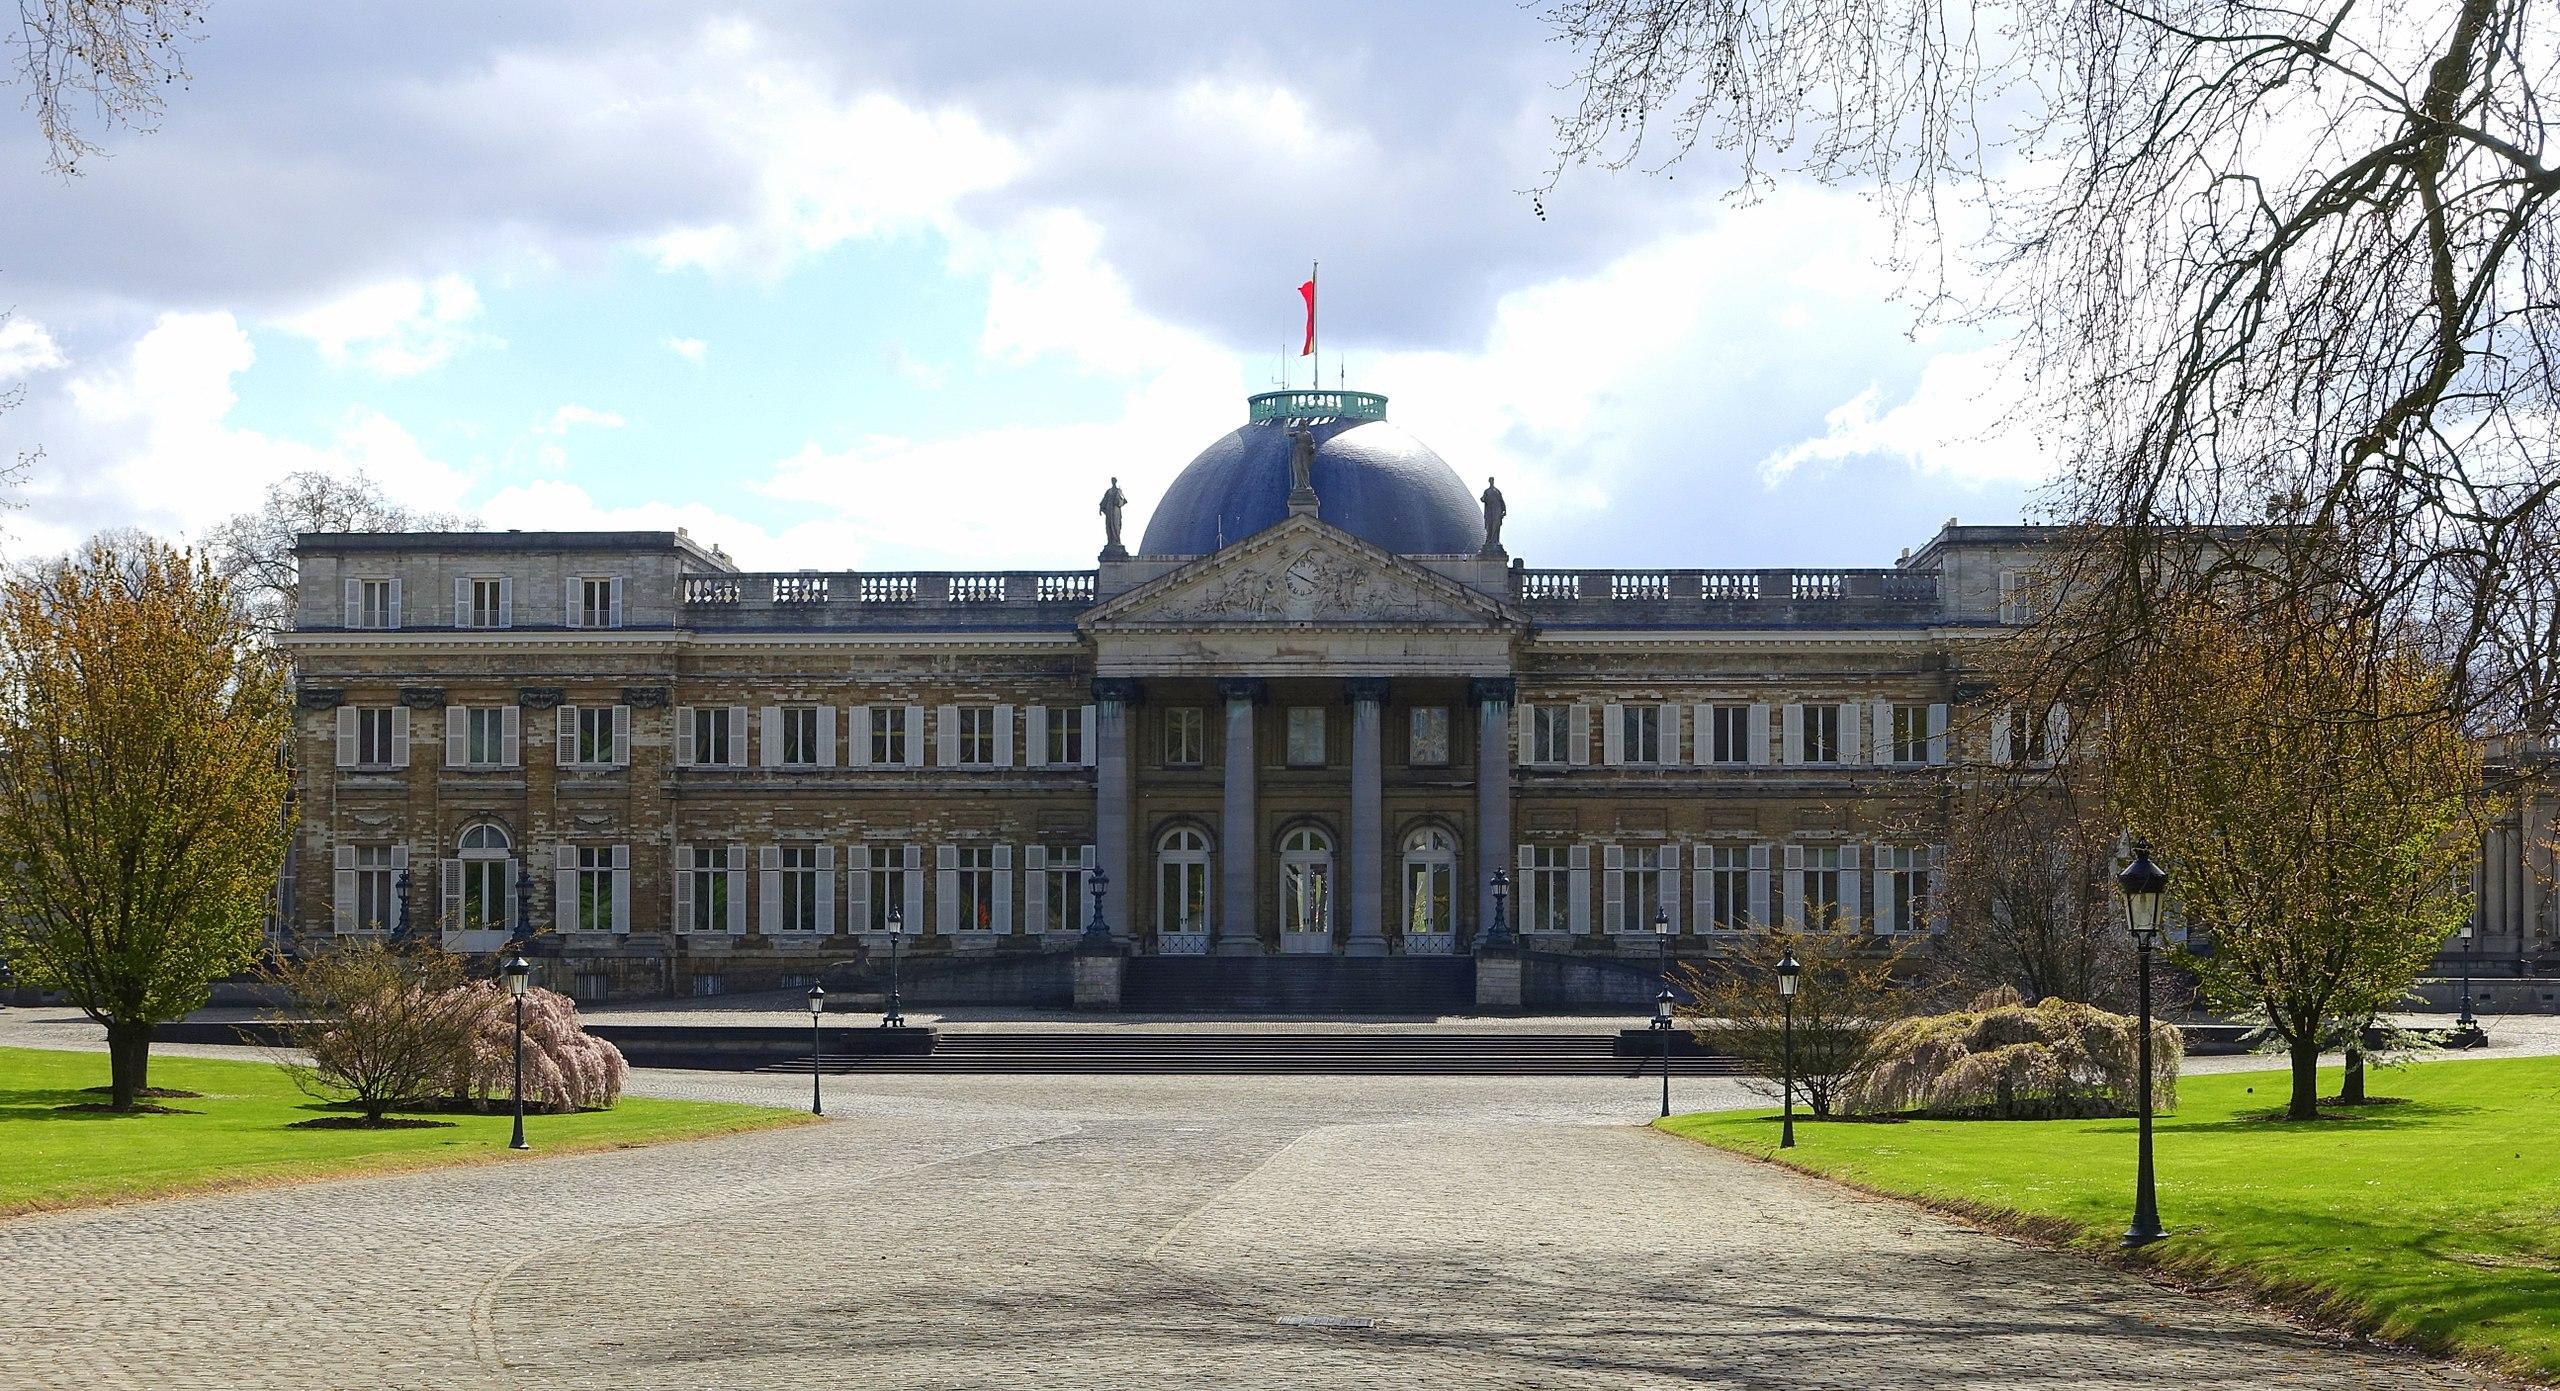 Βρυξέλλες - Βασιλικό Παλάτι του Λάακεν8f3